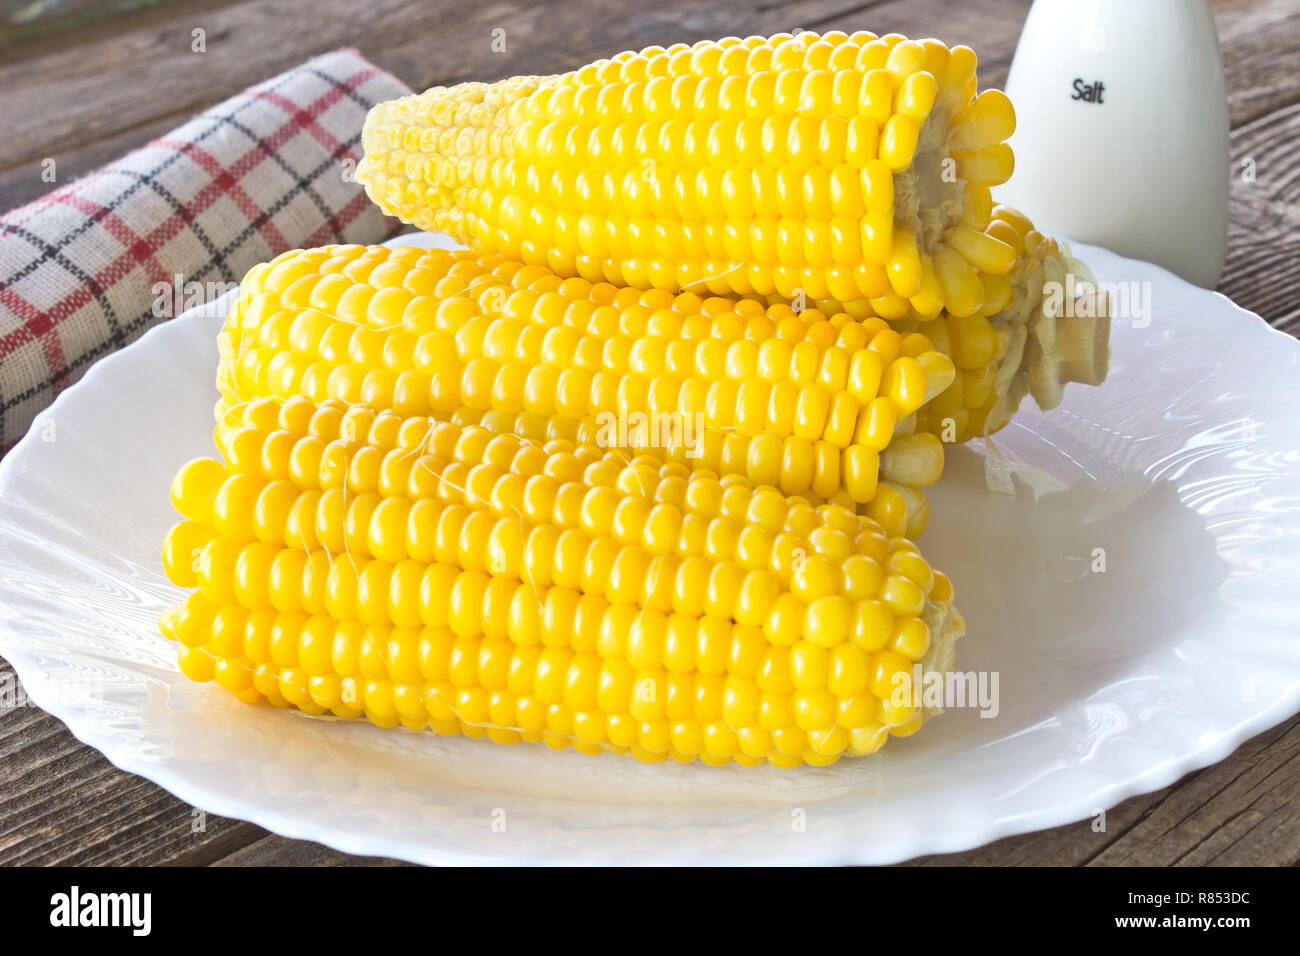 Las mazorcas de maíz cocida en la placa sobre la mesa de madera Foto de stock